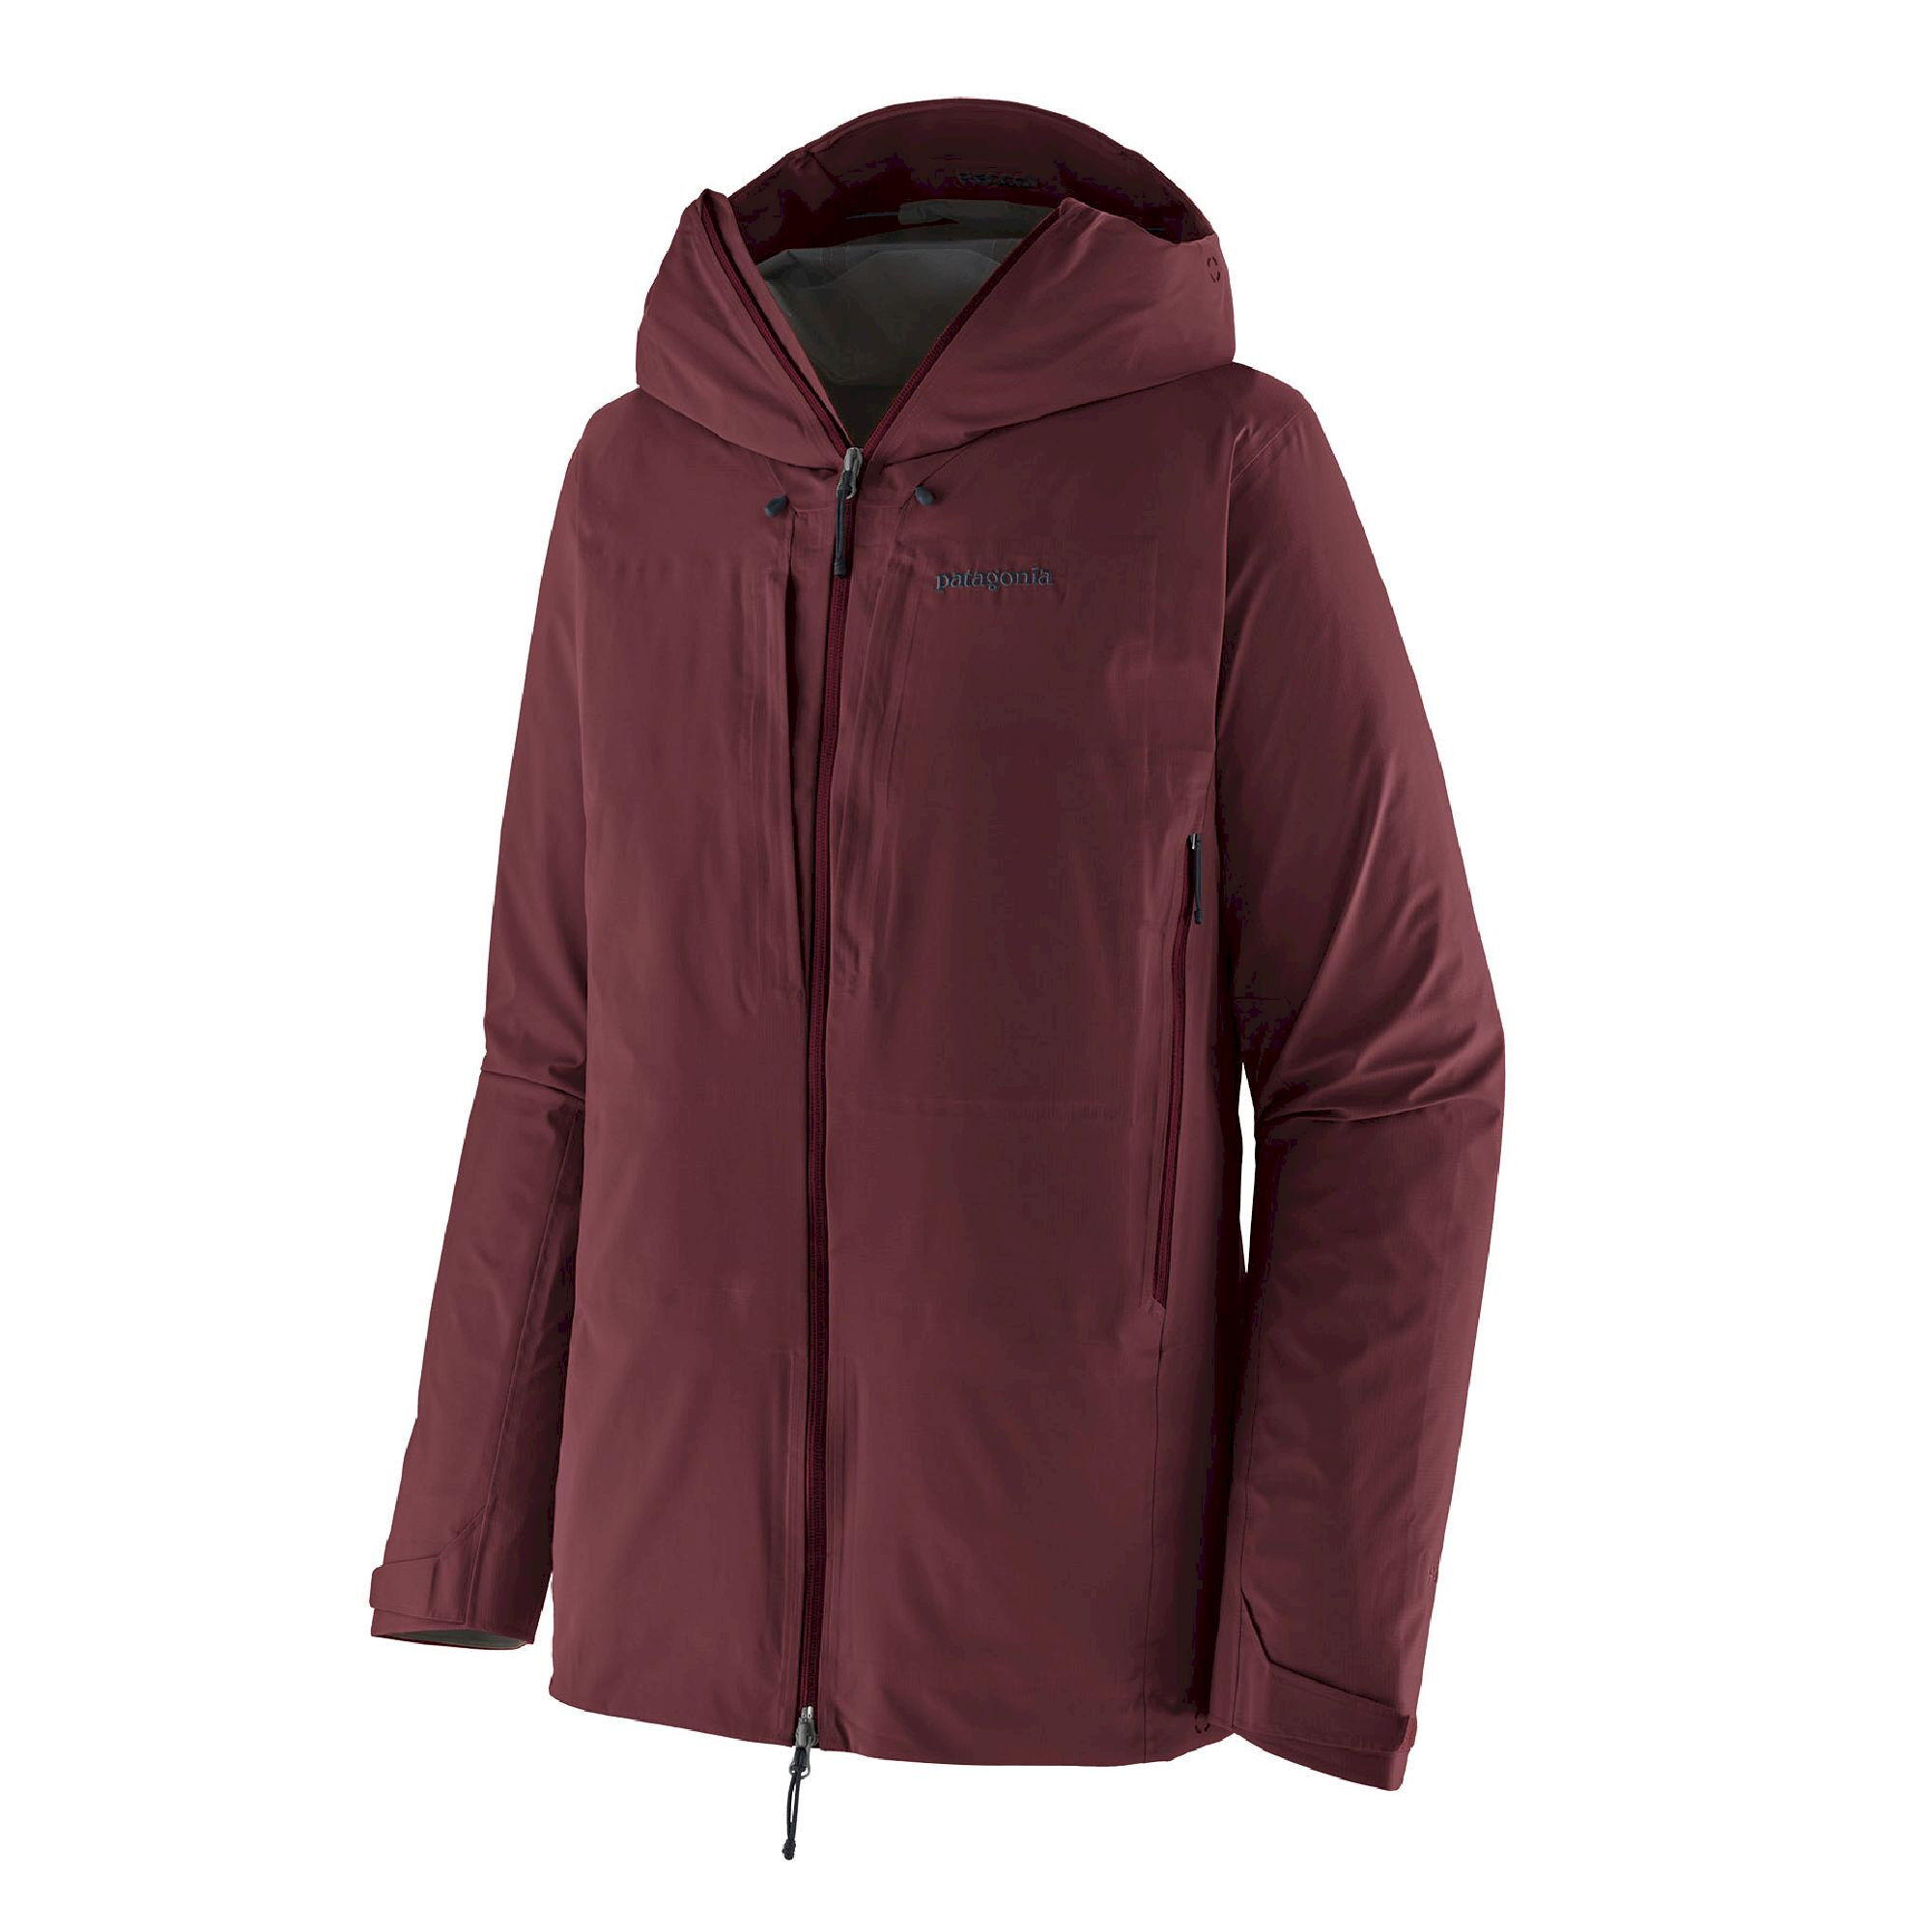 Patagonia Dual Aspect Jacket - Waterproof jacket - Men's